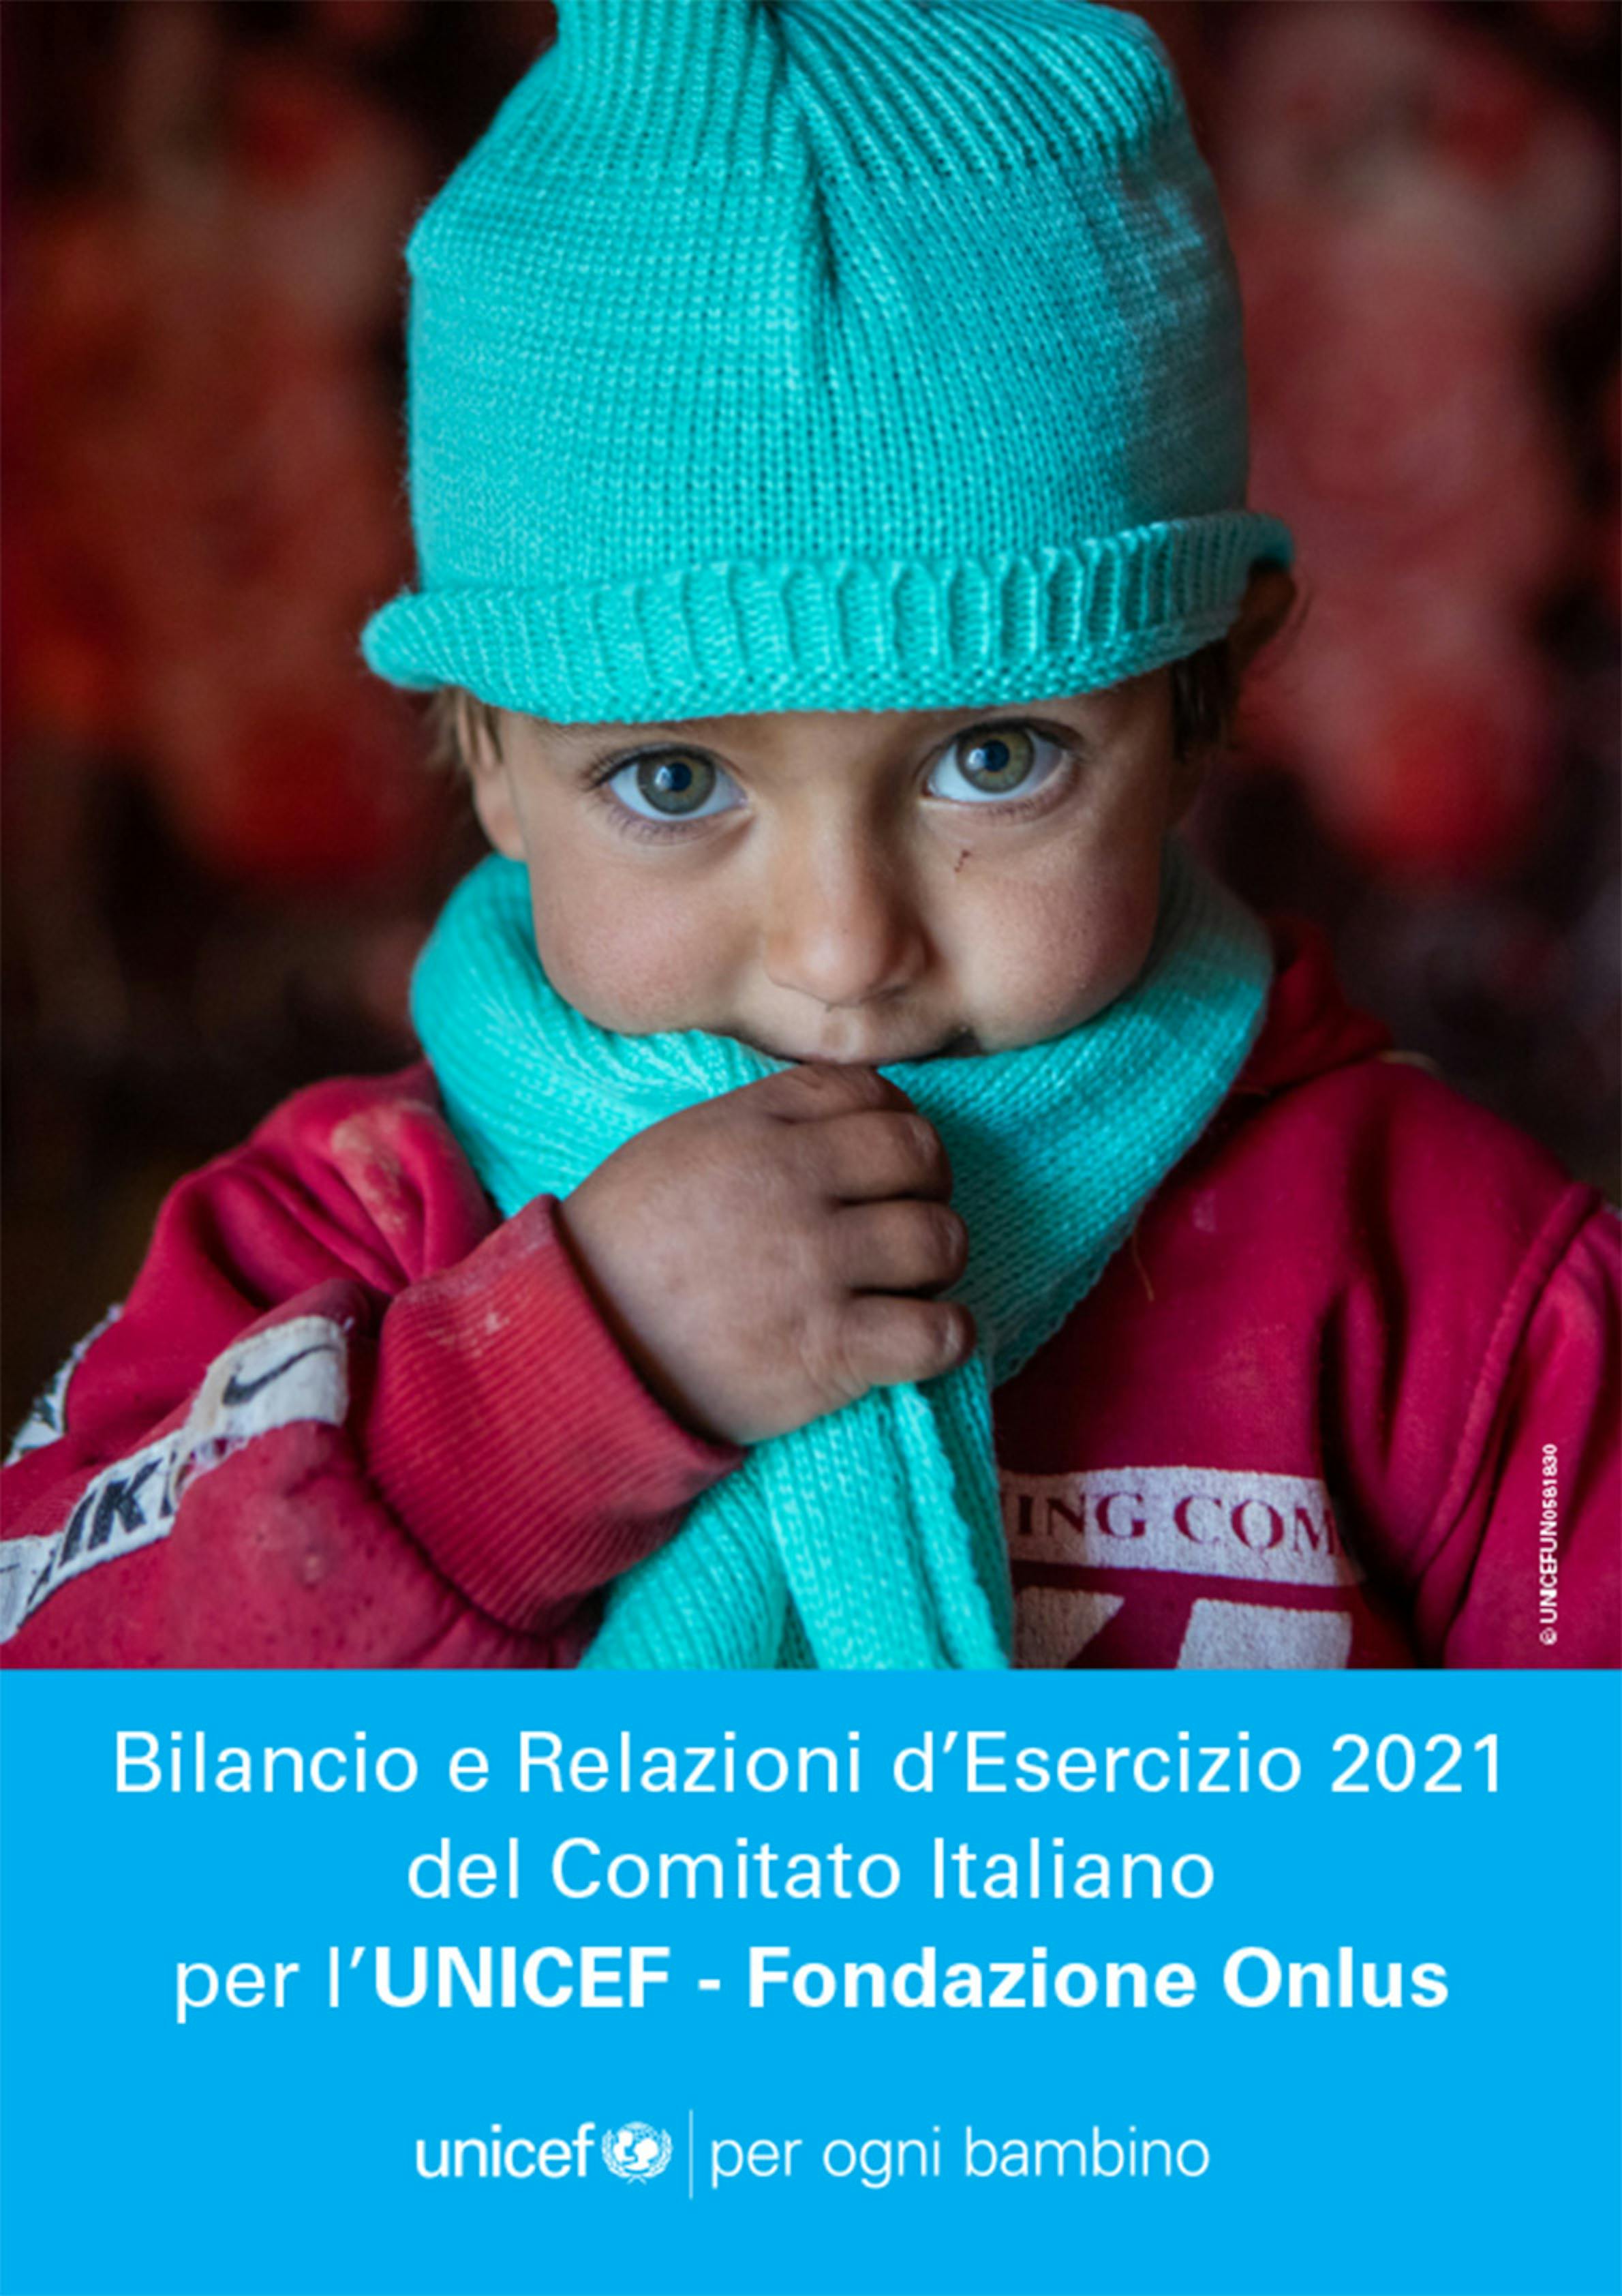 Bilancio e Relazioni d’Esercizio UNICEF Italia 2021 